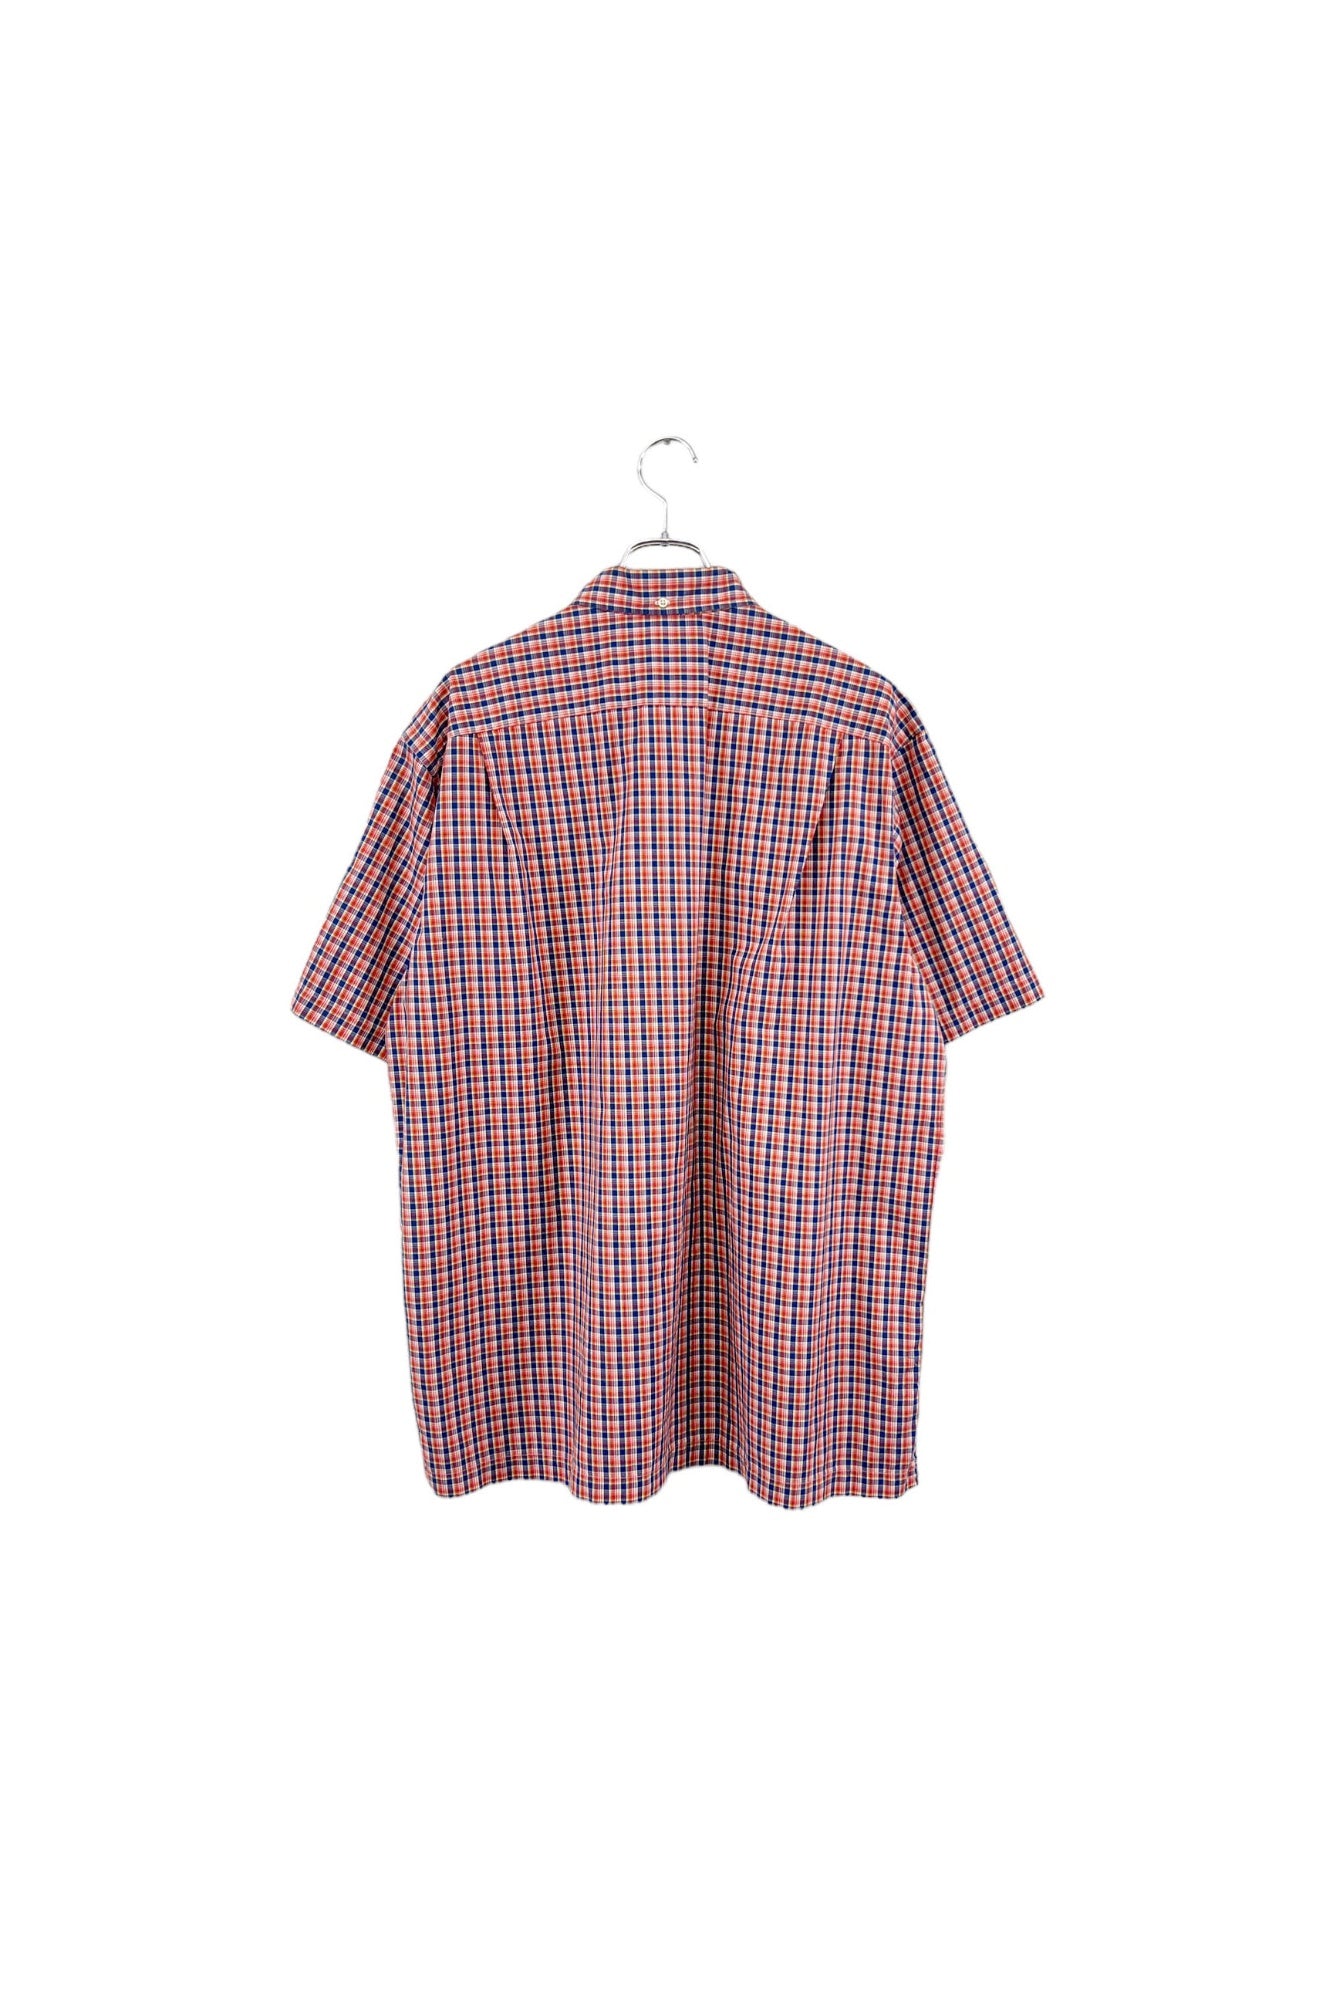 90s Ralph Lauren ANDY CAMP check shirt